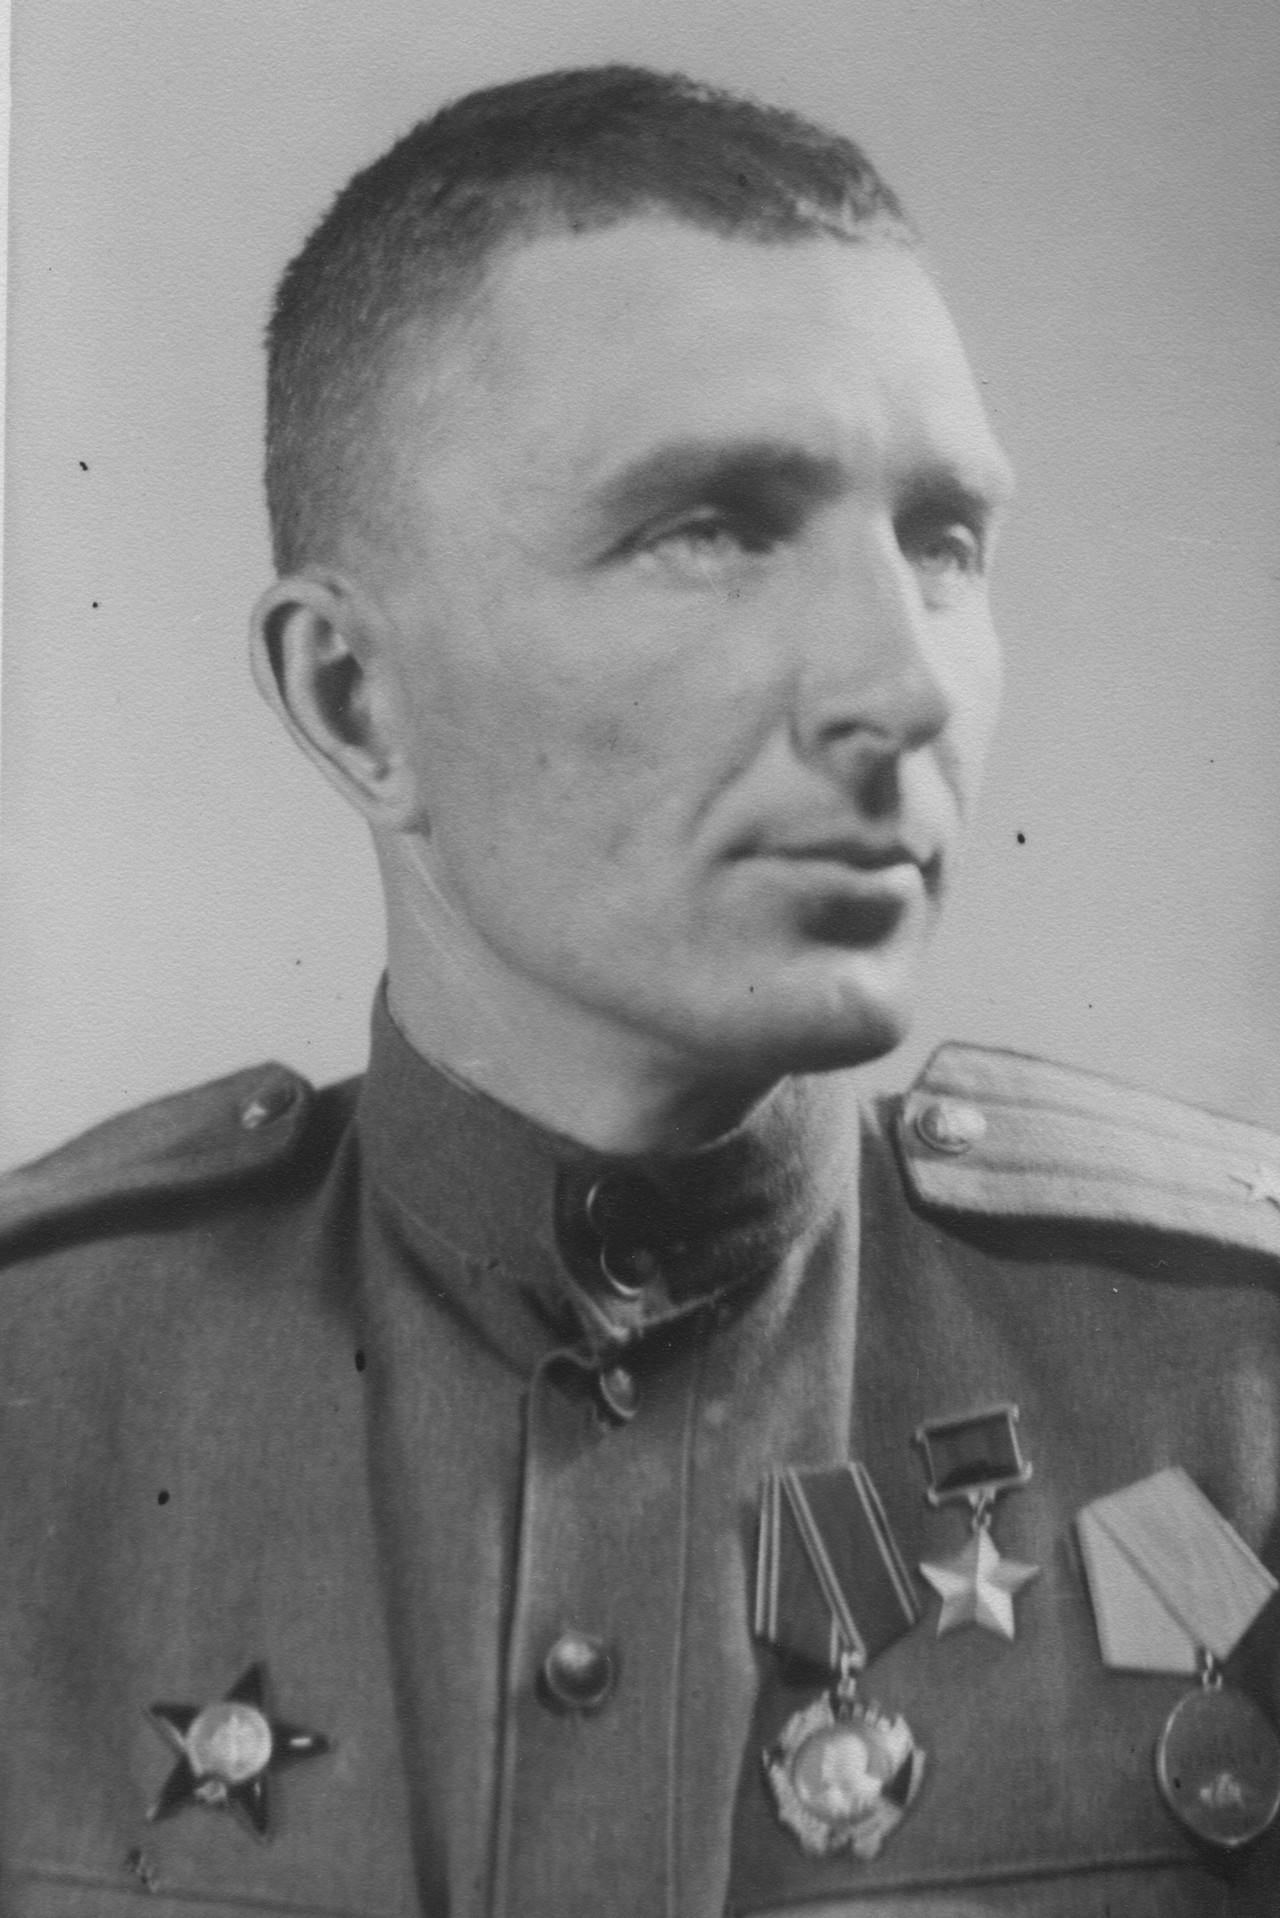 Сергей Борзенко, 1944 год, 1-й Украинский фронт.